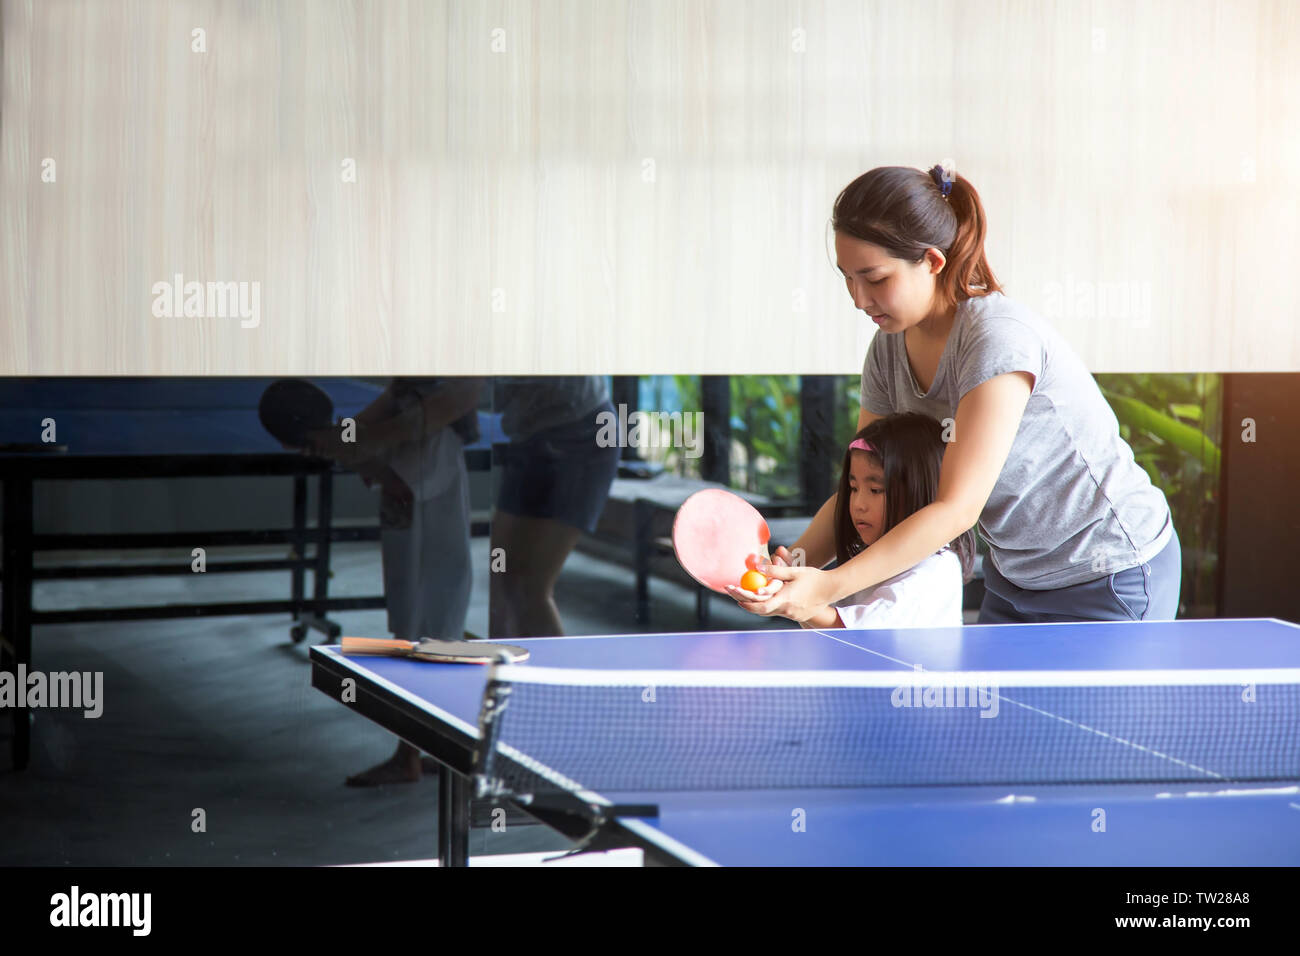 Asiatische Mutter und Kinder coaching Tischtennis spielen Sport Spiel auf Sommer Berufung. Mom halten Tochter Hand teble Tennis Schläger und Ball ist glücklich Mo Stockfoto